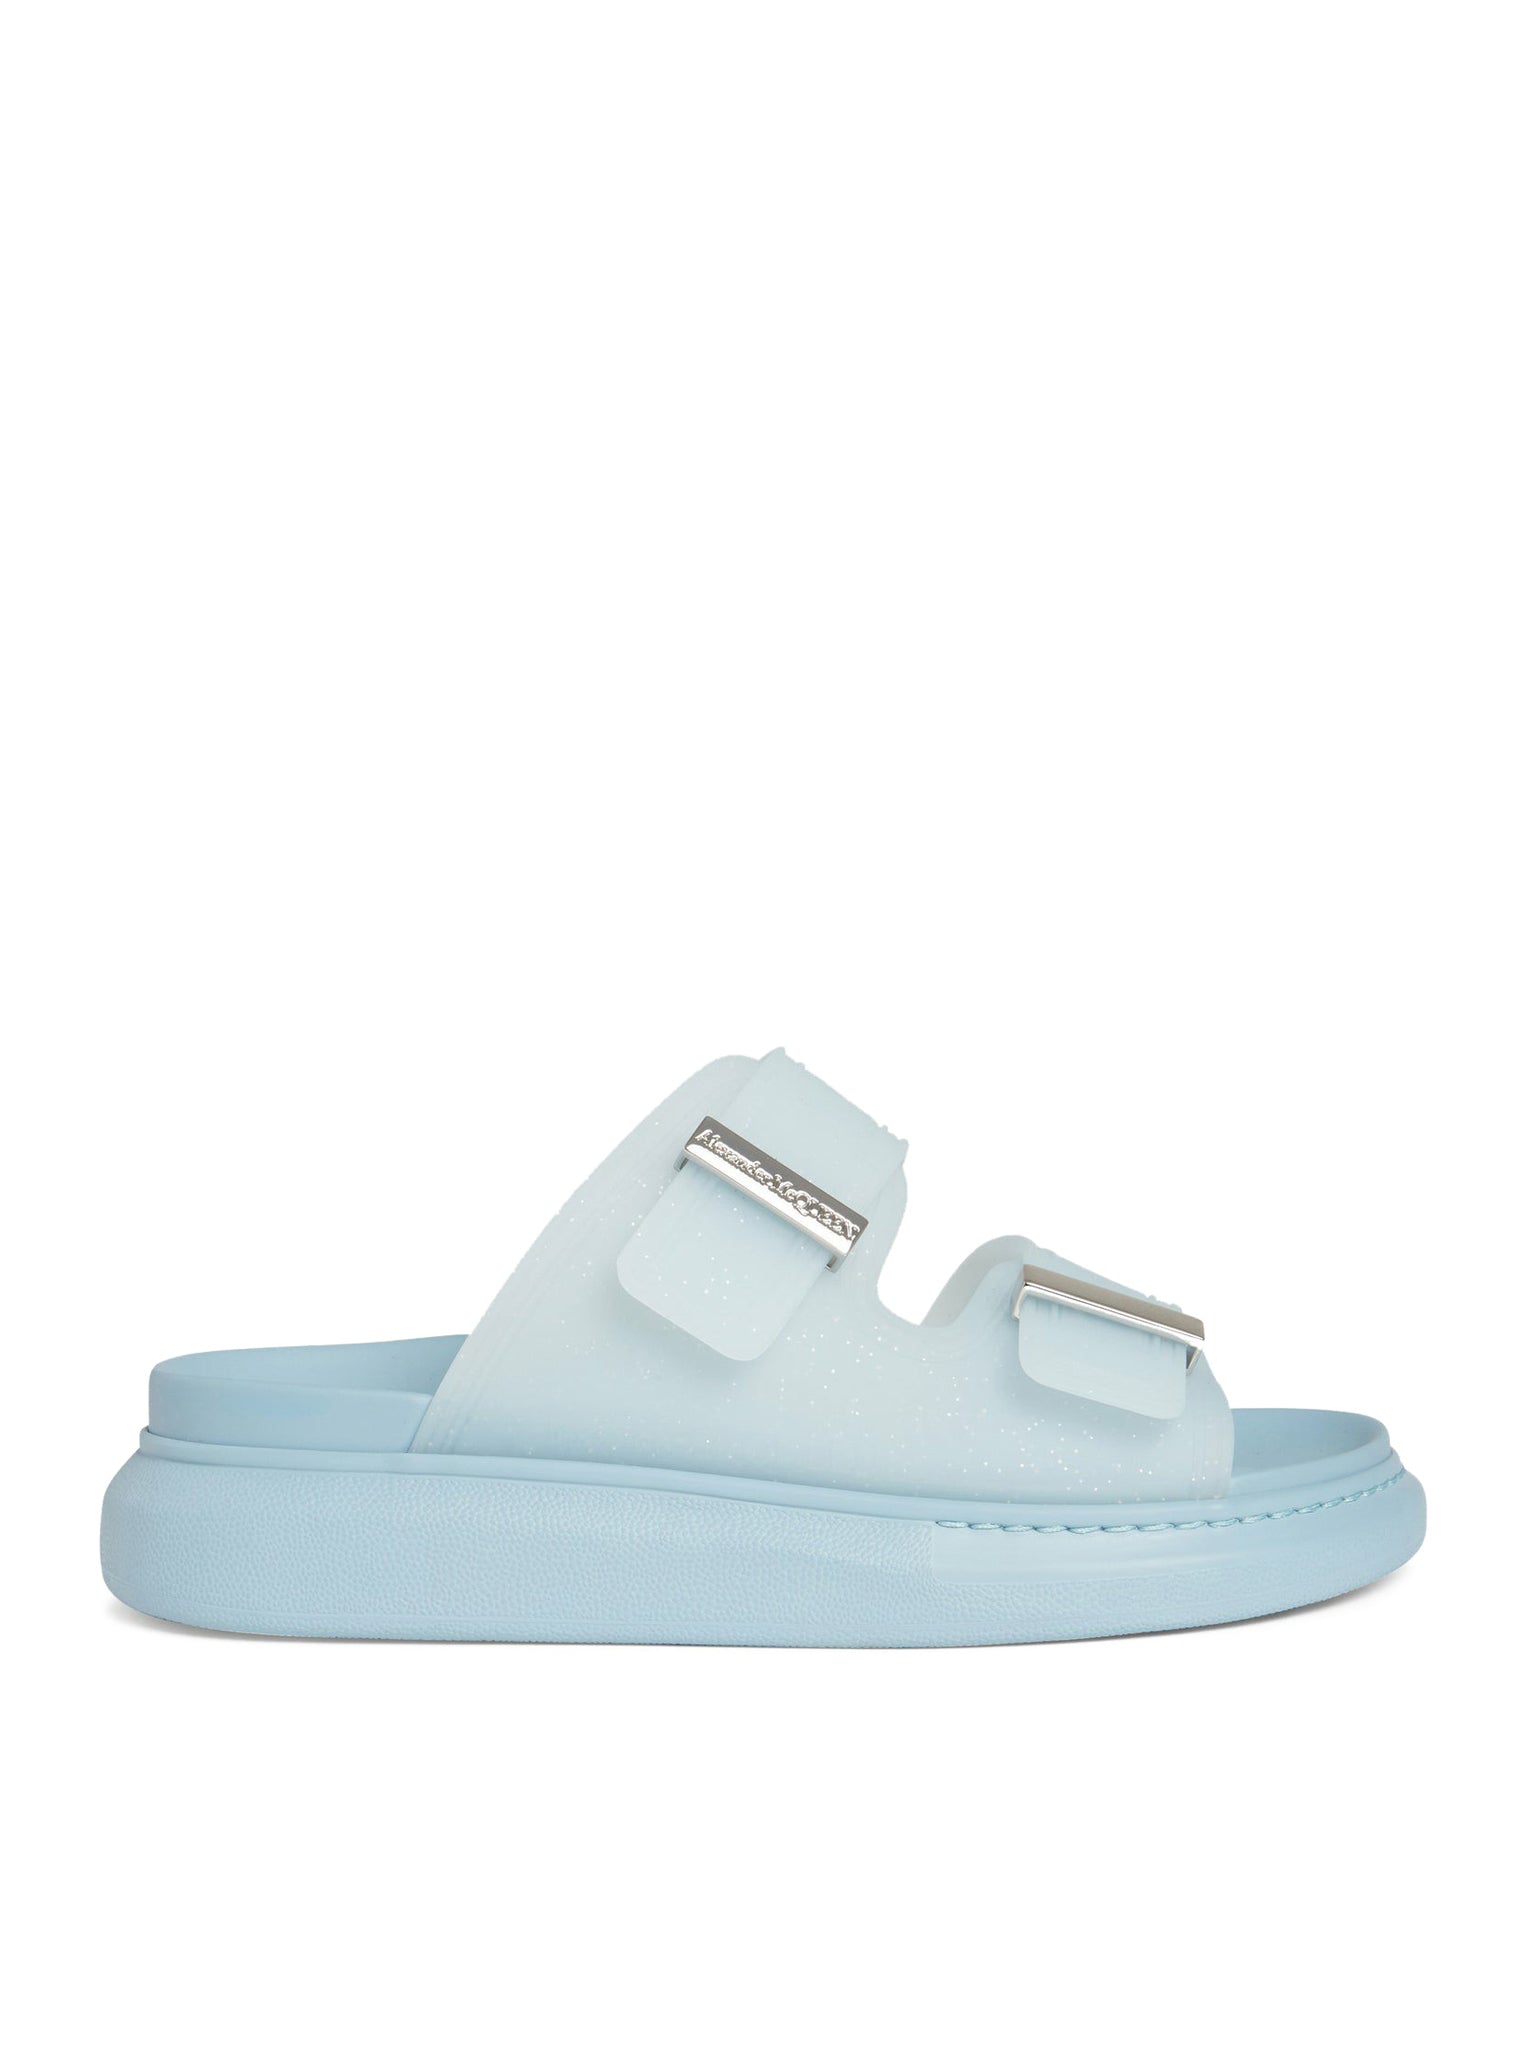 ``Hybrid`` sandals in light blue rubber